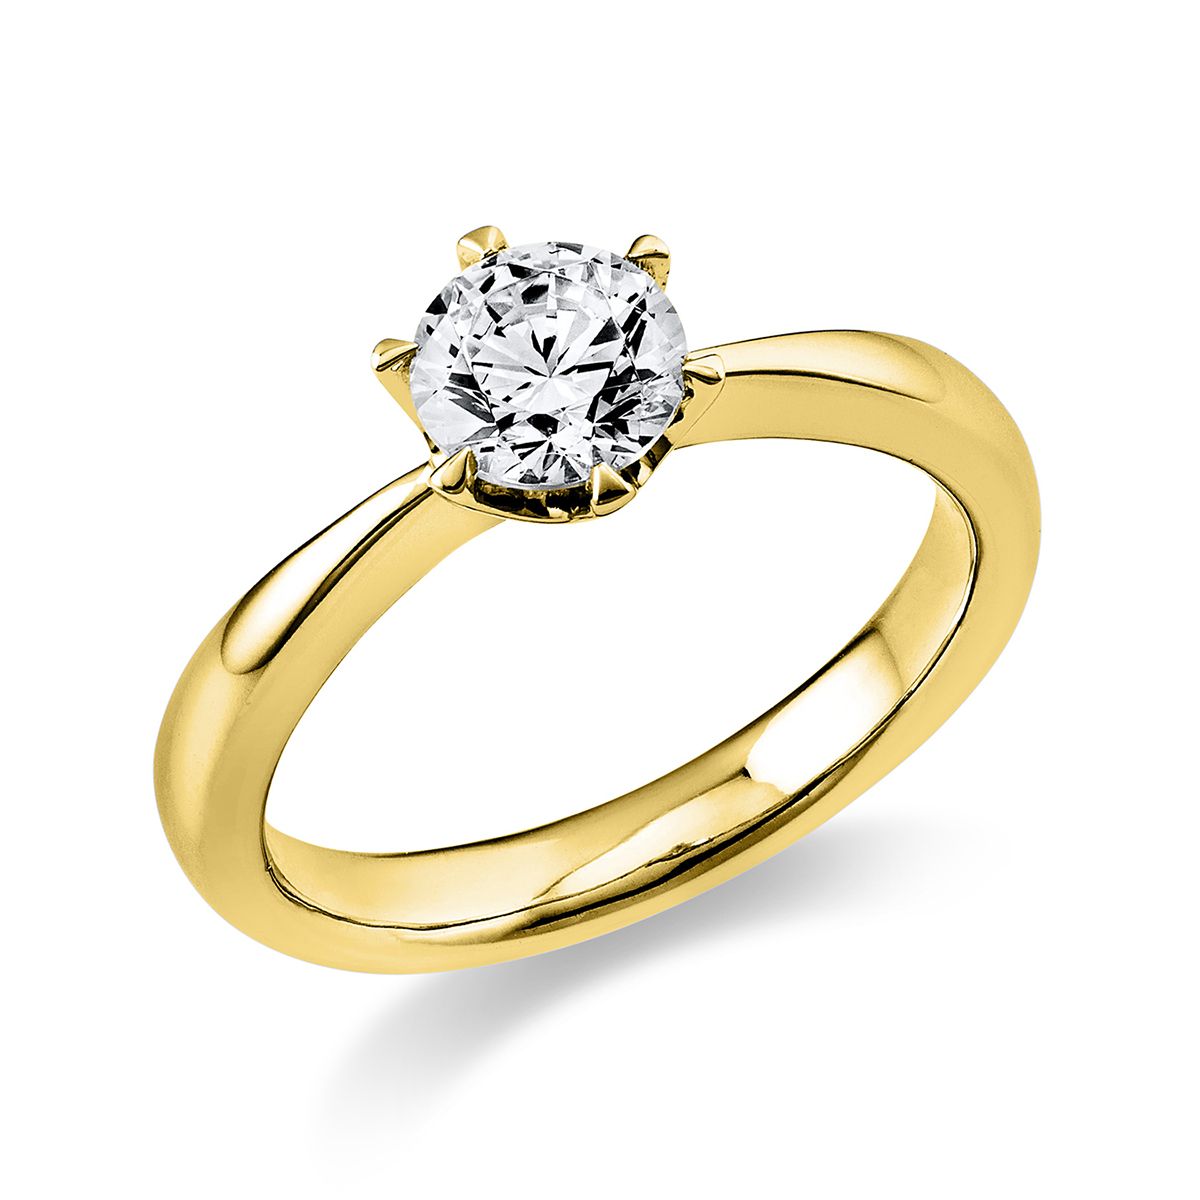 Solitär-Ring 6-Griff-Fassung 585/14K Gelbgold, Diamant 0.7 ct.